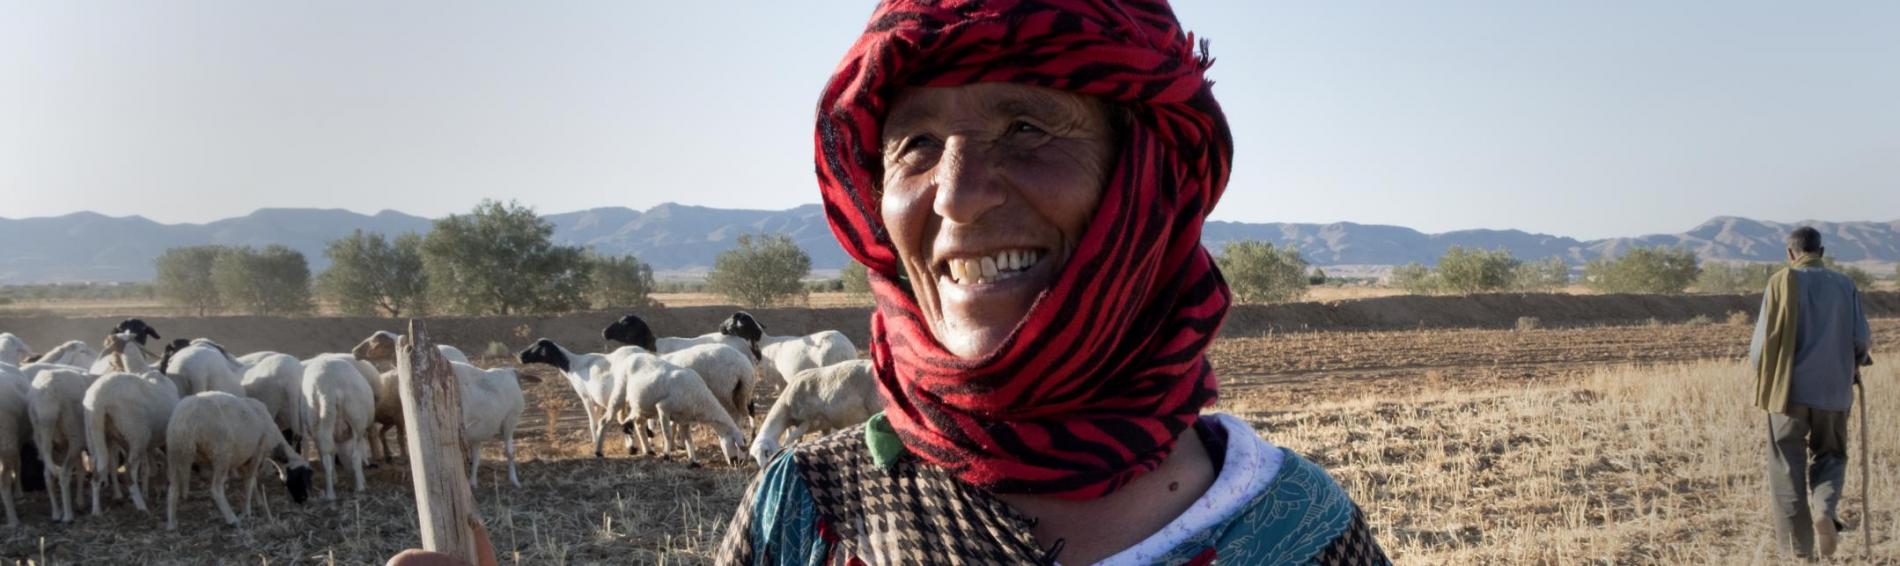 Een Tunesische herdersvrouw van middelbare leeftijd lacht de camera toe. Een doek om haar hoofd beschermt haar tegen de zon. In haar hand draagt ze een stok om het vee te mennen. Ze staat in het midden van een veld, tussen een kudde schapen. Een beetje verderop staat een man met identieke herdersstok. 